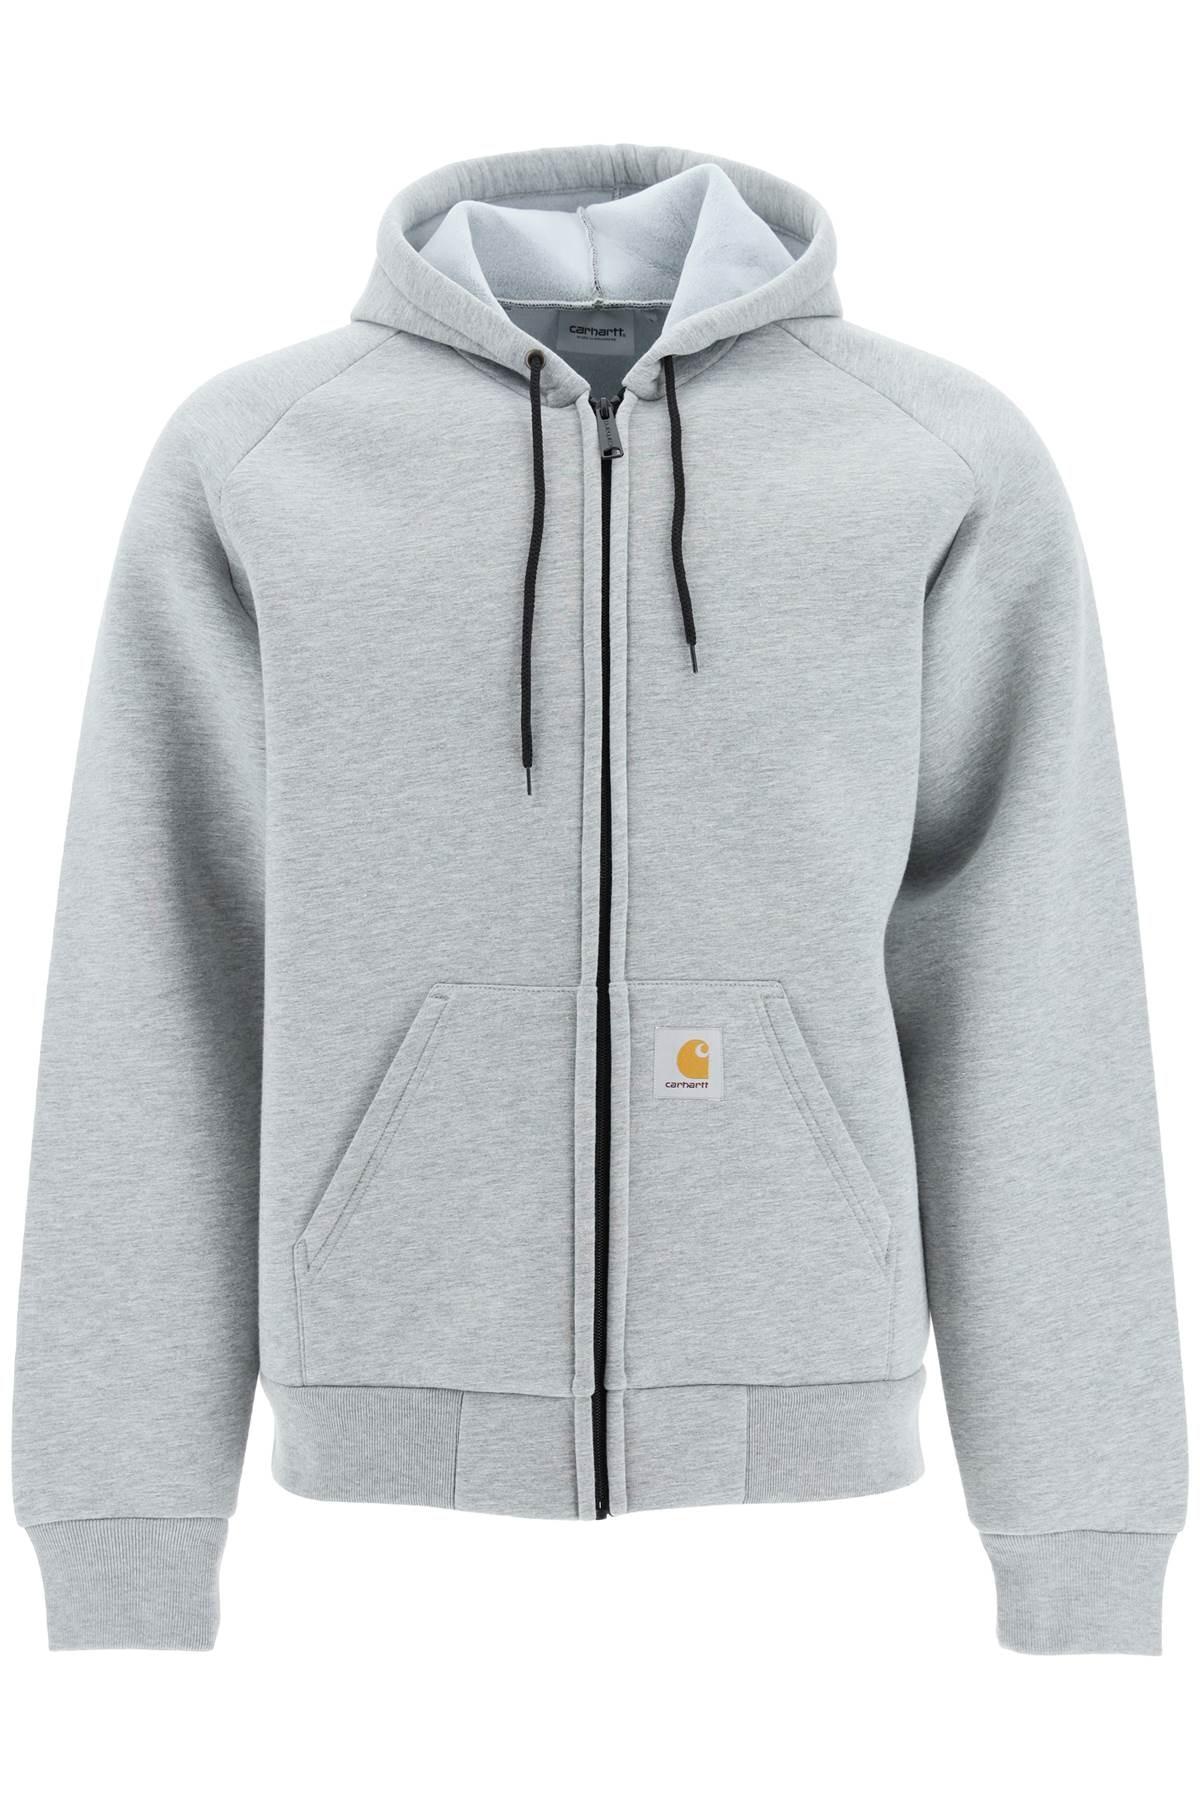 Carhartt WIP Car-lux Full Zip Hoodie-jacket in Gray for Men | Lyst